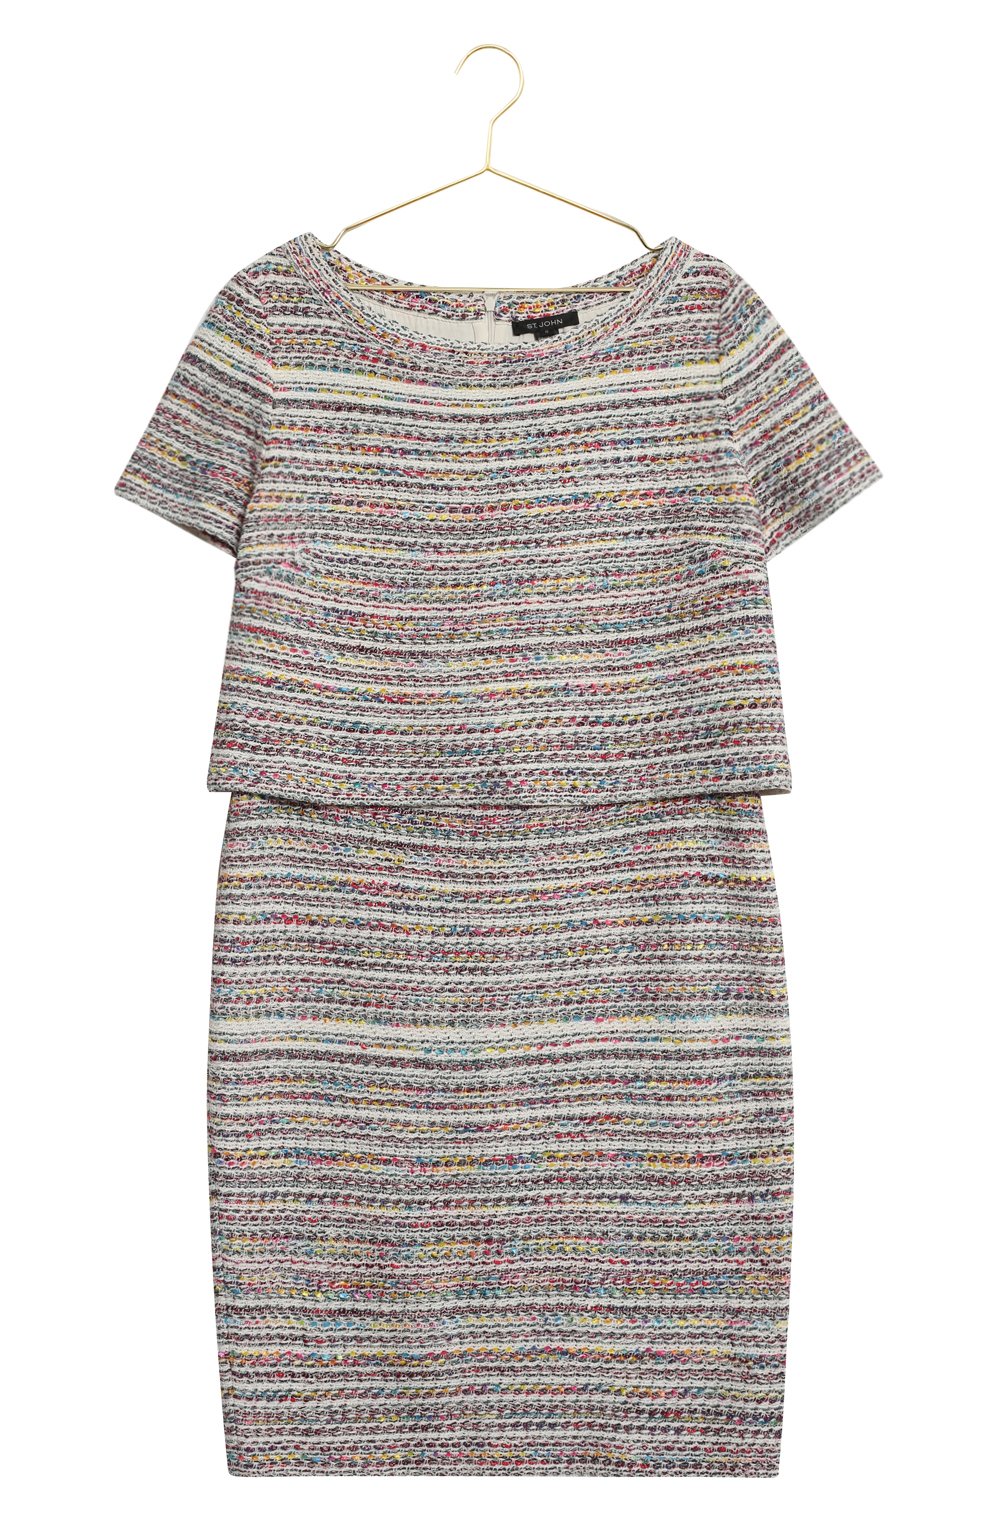 Платье из хлопка и шерсти | St. John | Разноцветный - 1